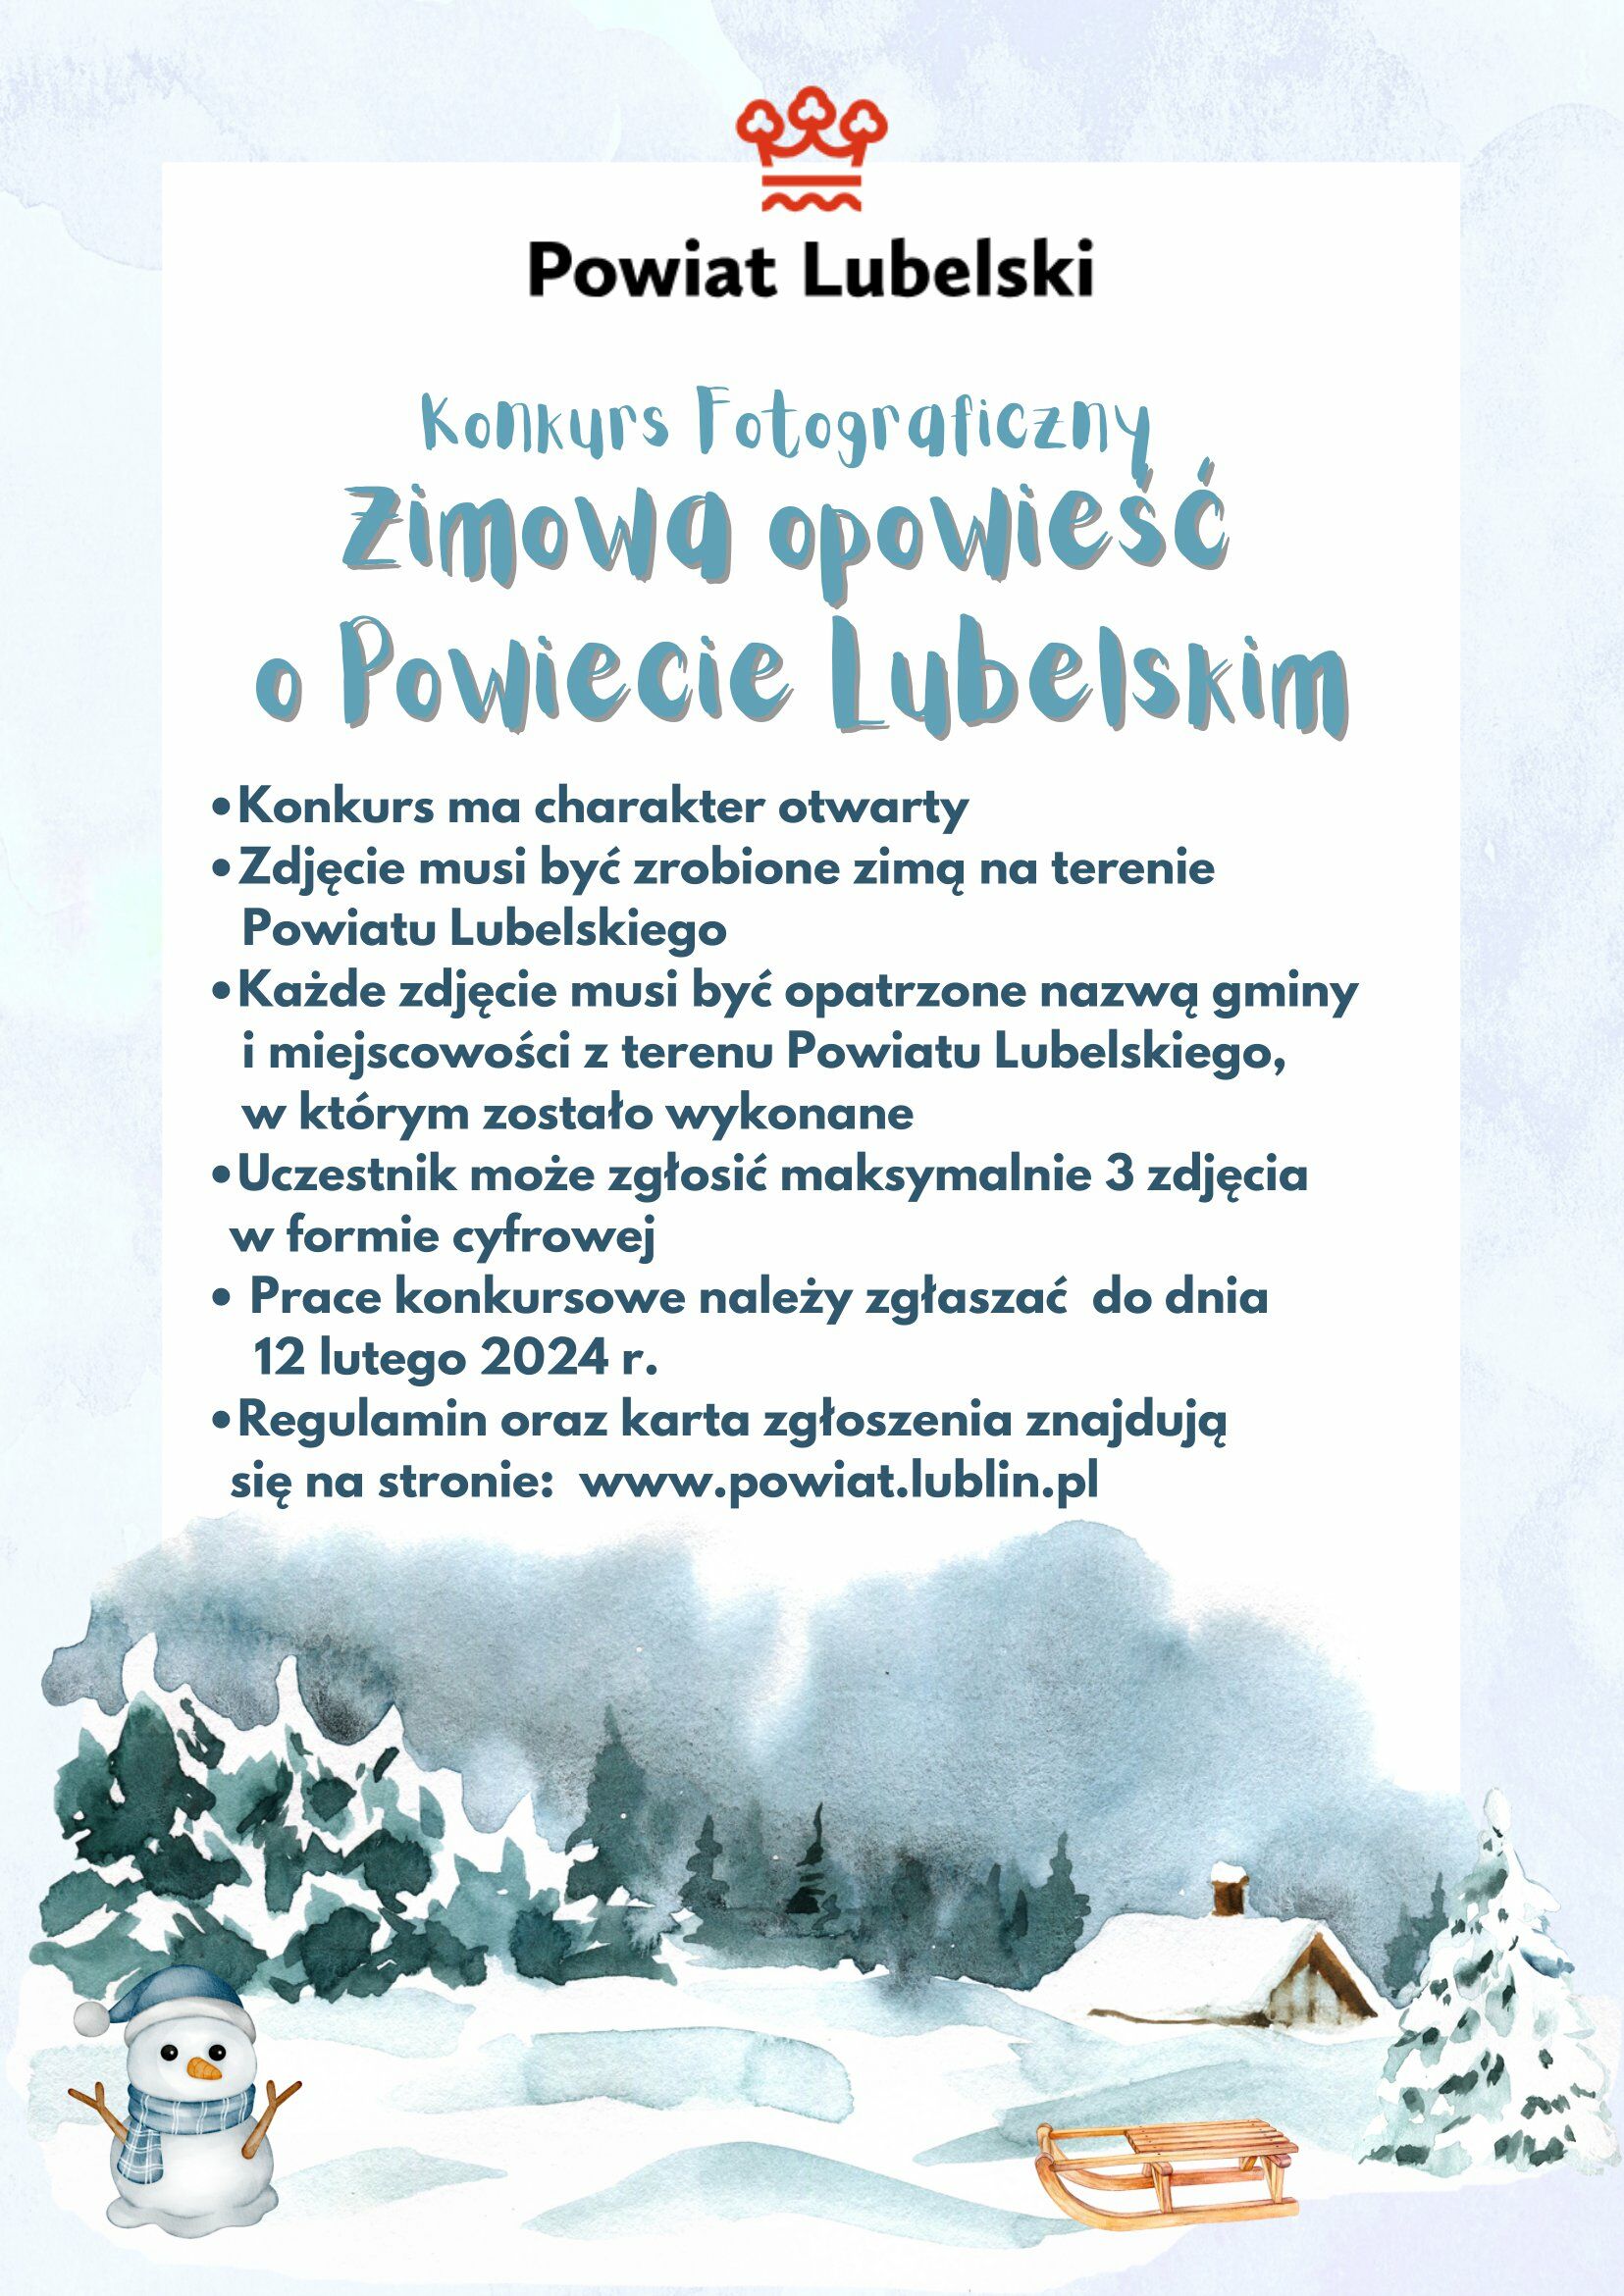 Plakat wydarzenia fotograficznego z zimową tematyką, tekstem w języku polskim oraz ilustracjami śniegu, drzew i sympatycznego bałwana.